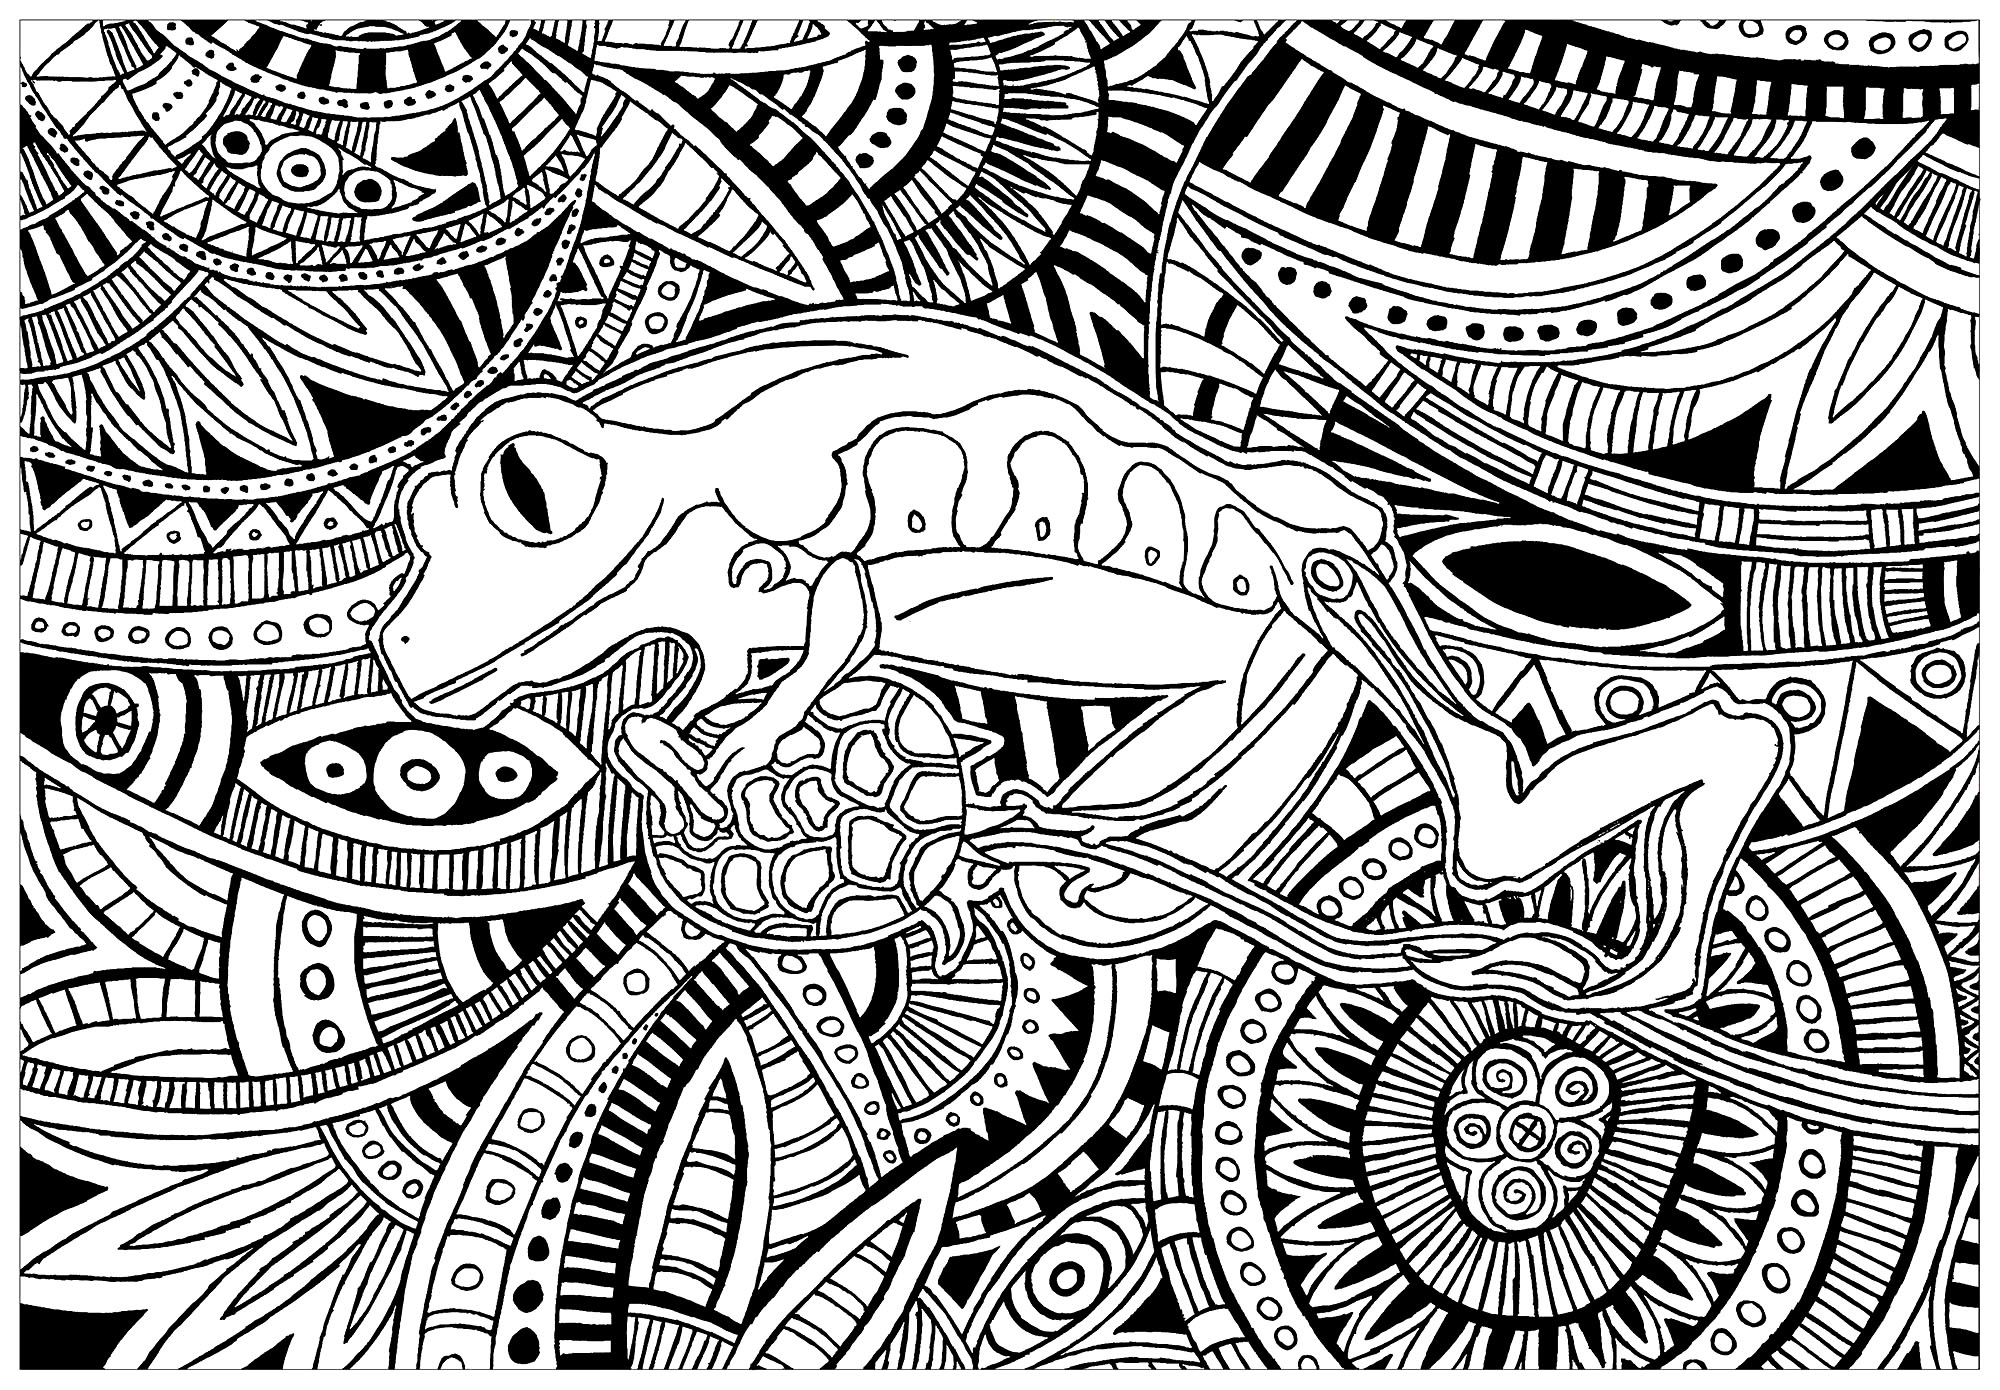 Magnifique grenouille avec fond plein de motifs complexes, Artiste : Lucie